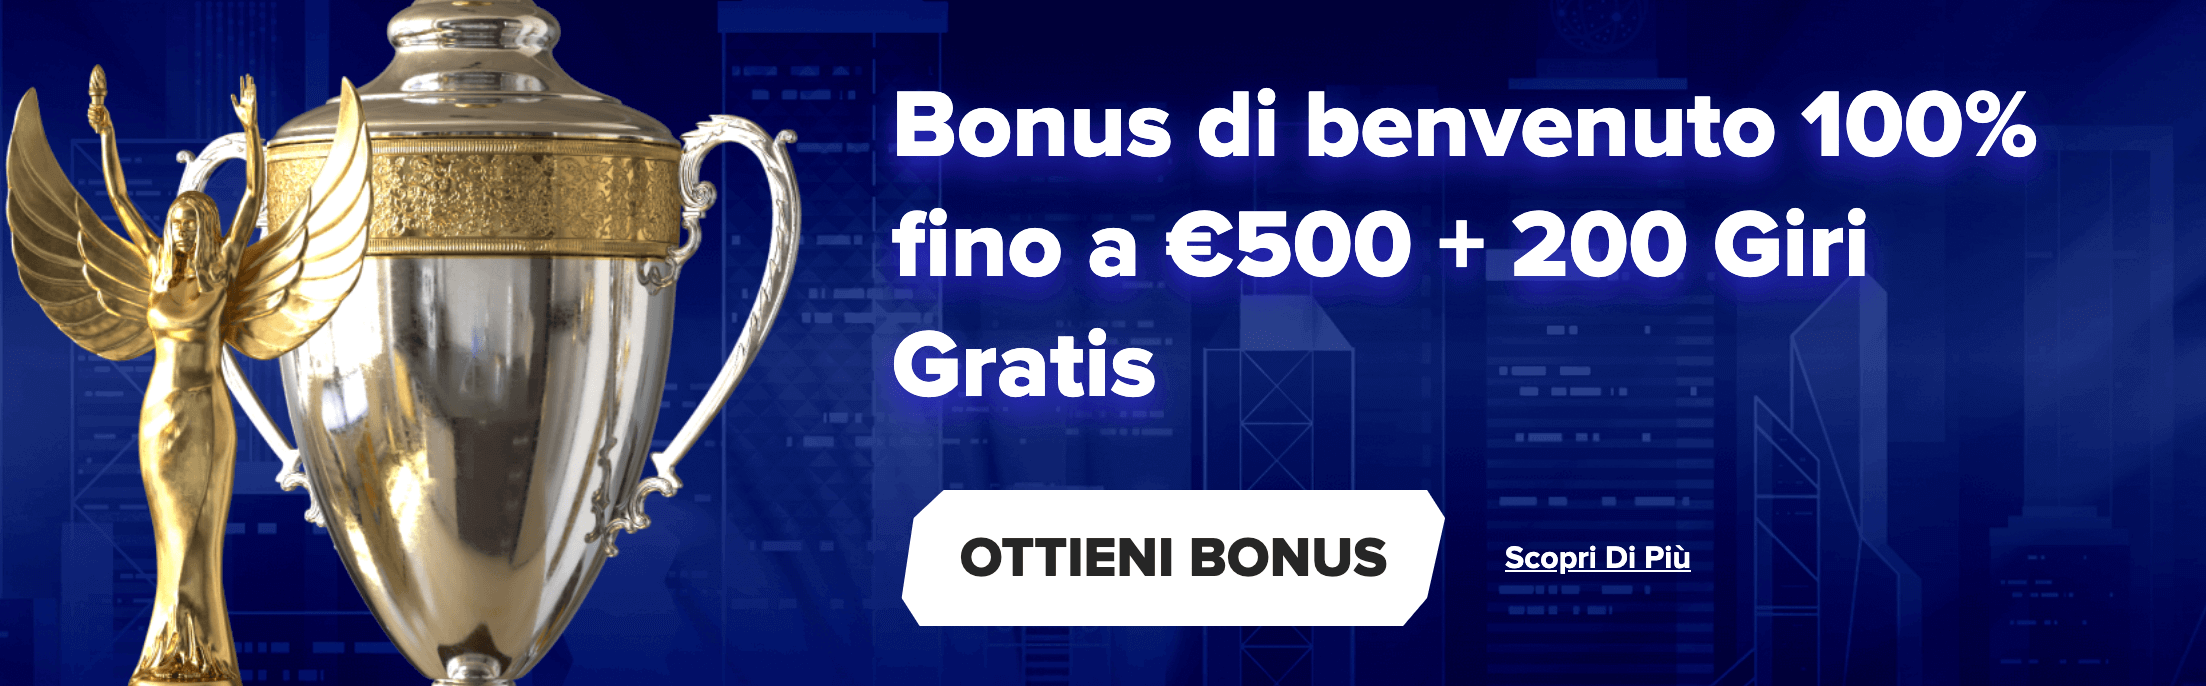 Sportaza Casino Bonus Benvenuto